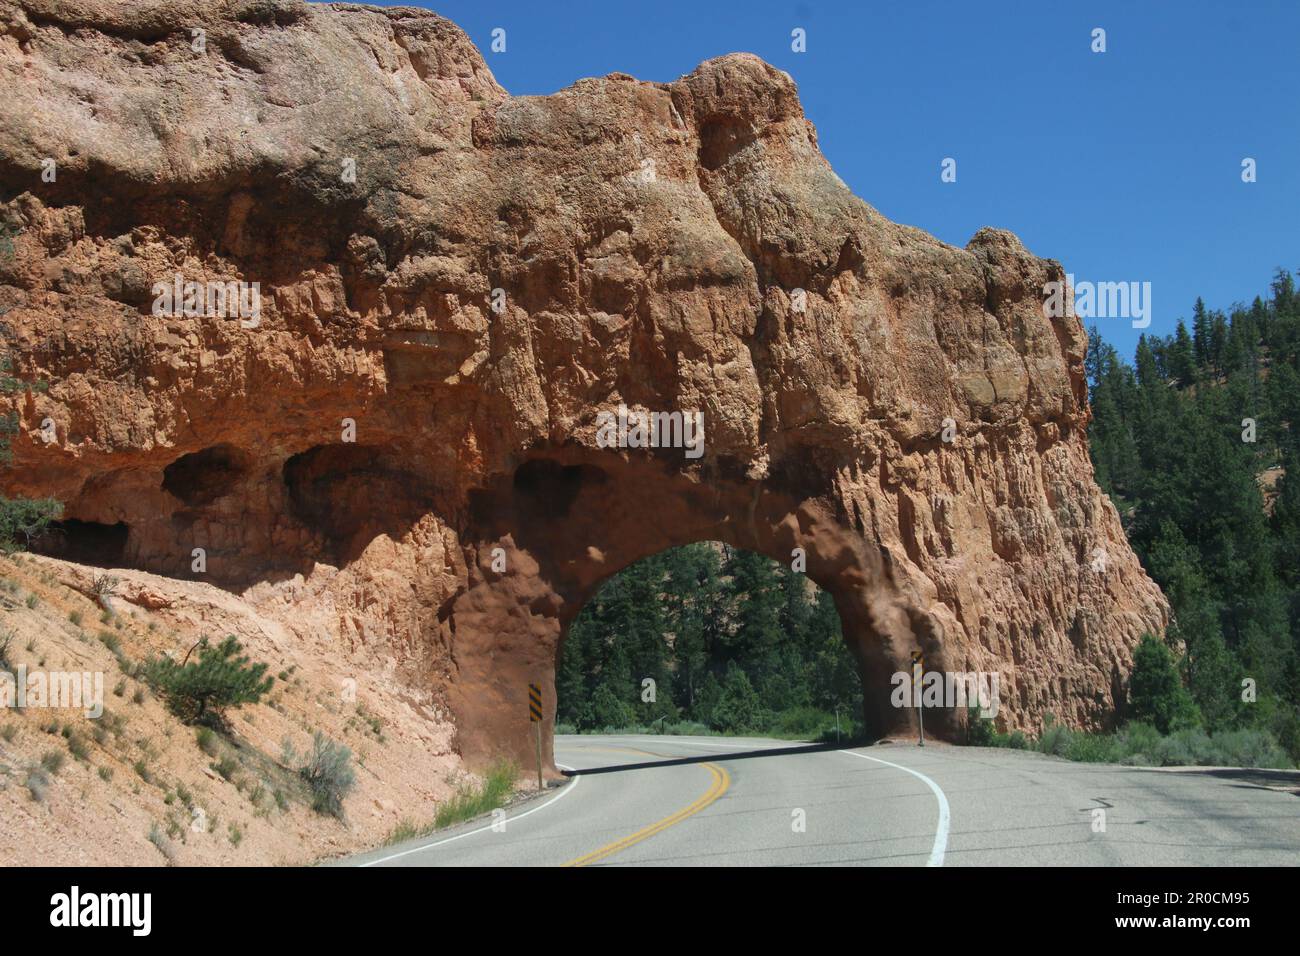 Le parc national de Zion est un parc national américain situé dans le sud-ouest de l'Utah, près de la ville de Springdale. Banque D'Images